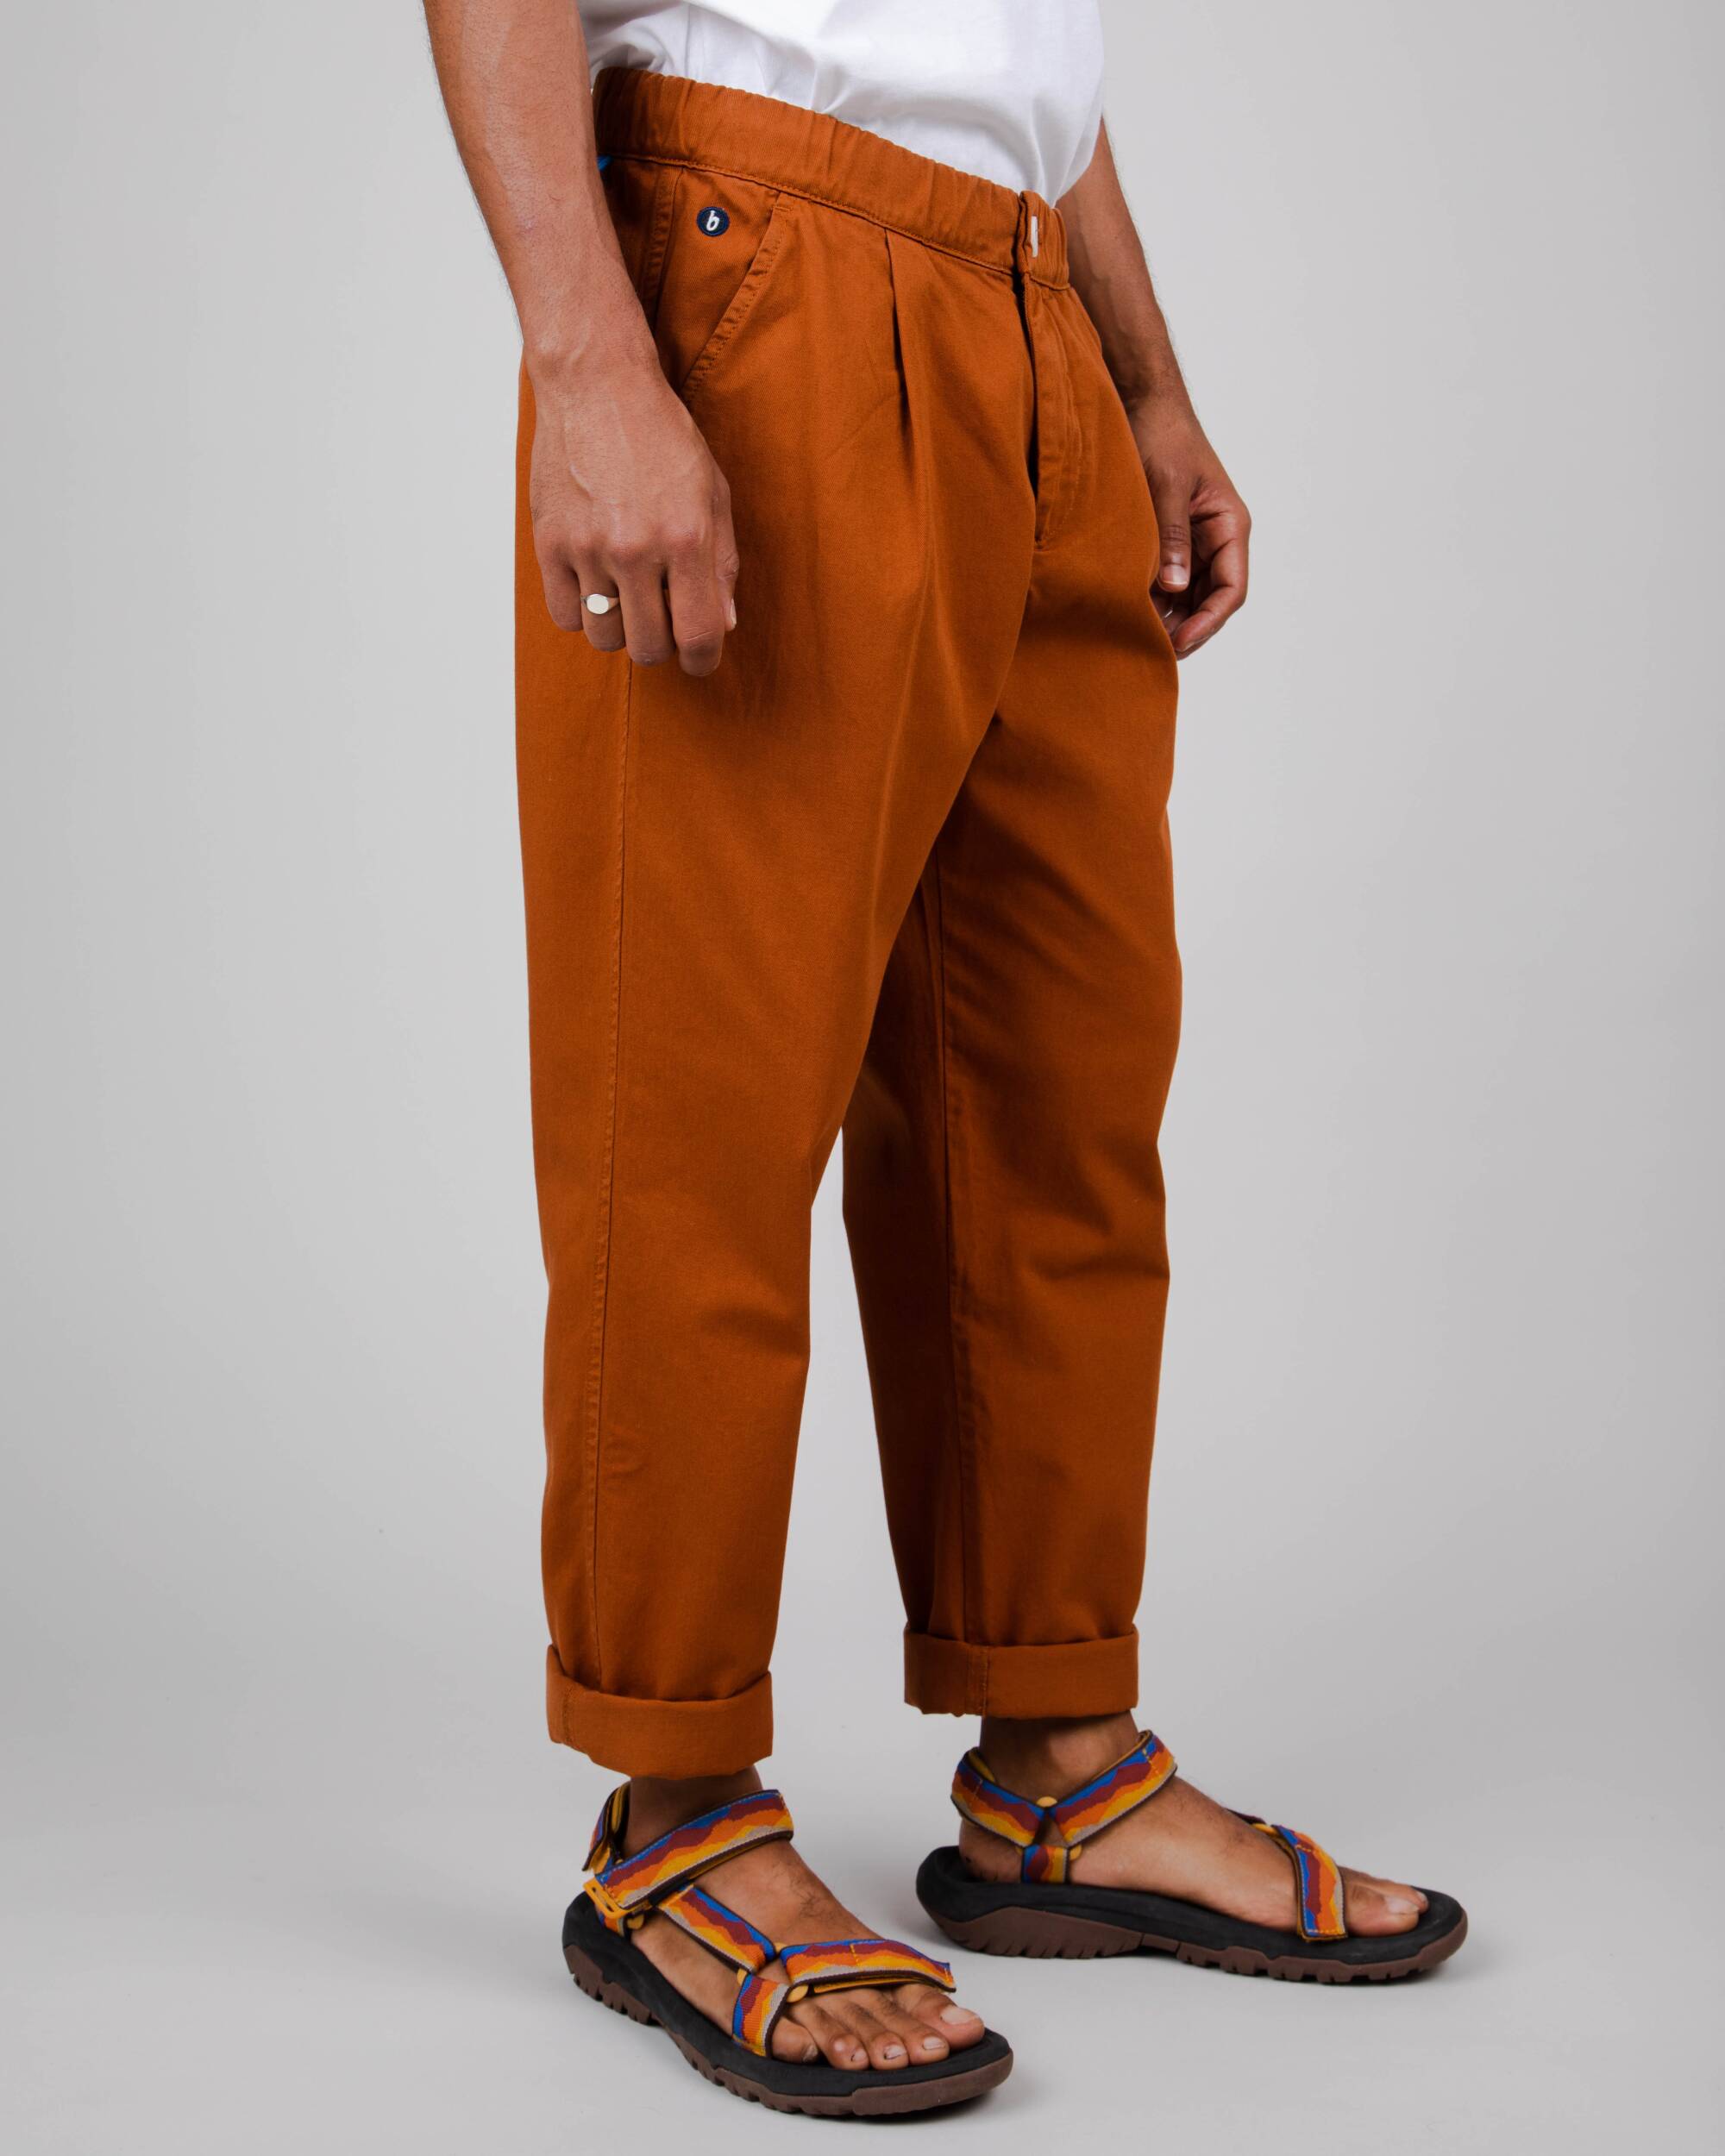 Pantalon chino Comfort orange foncé en coton biologique de Brava Fabrics